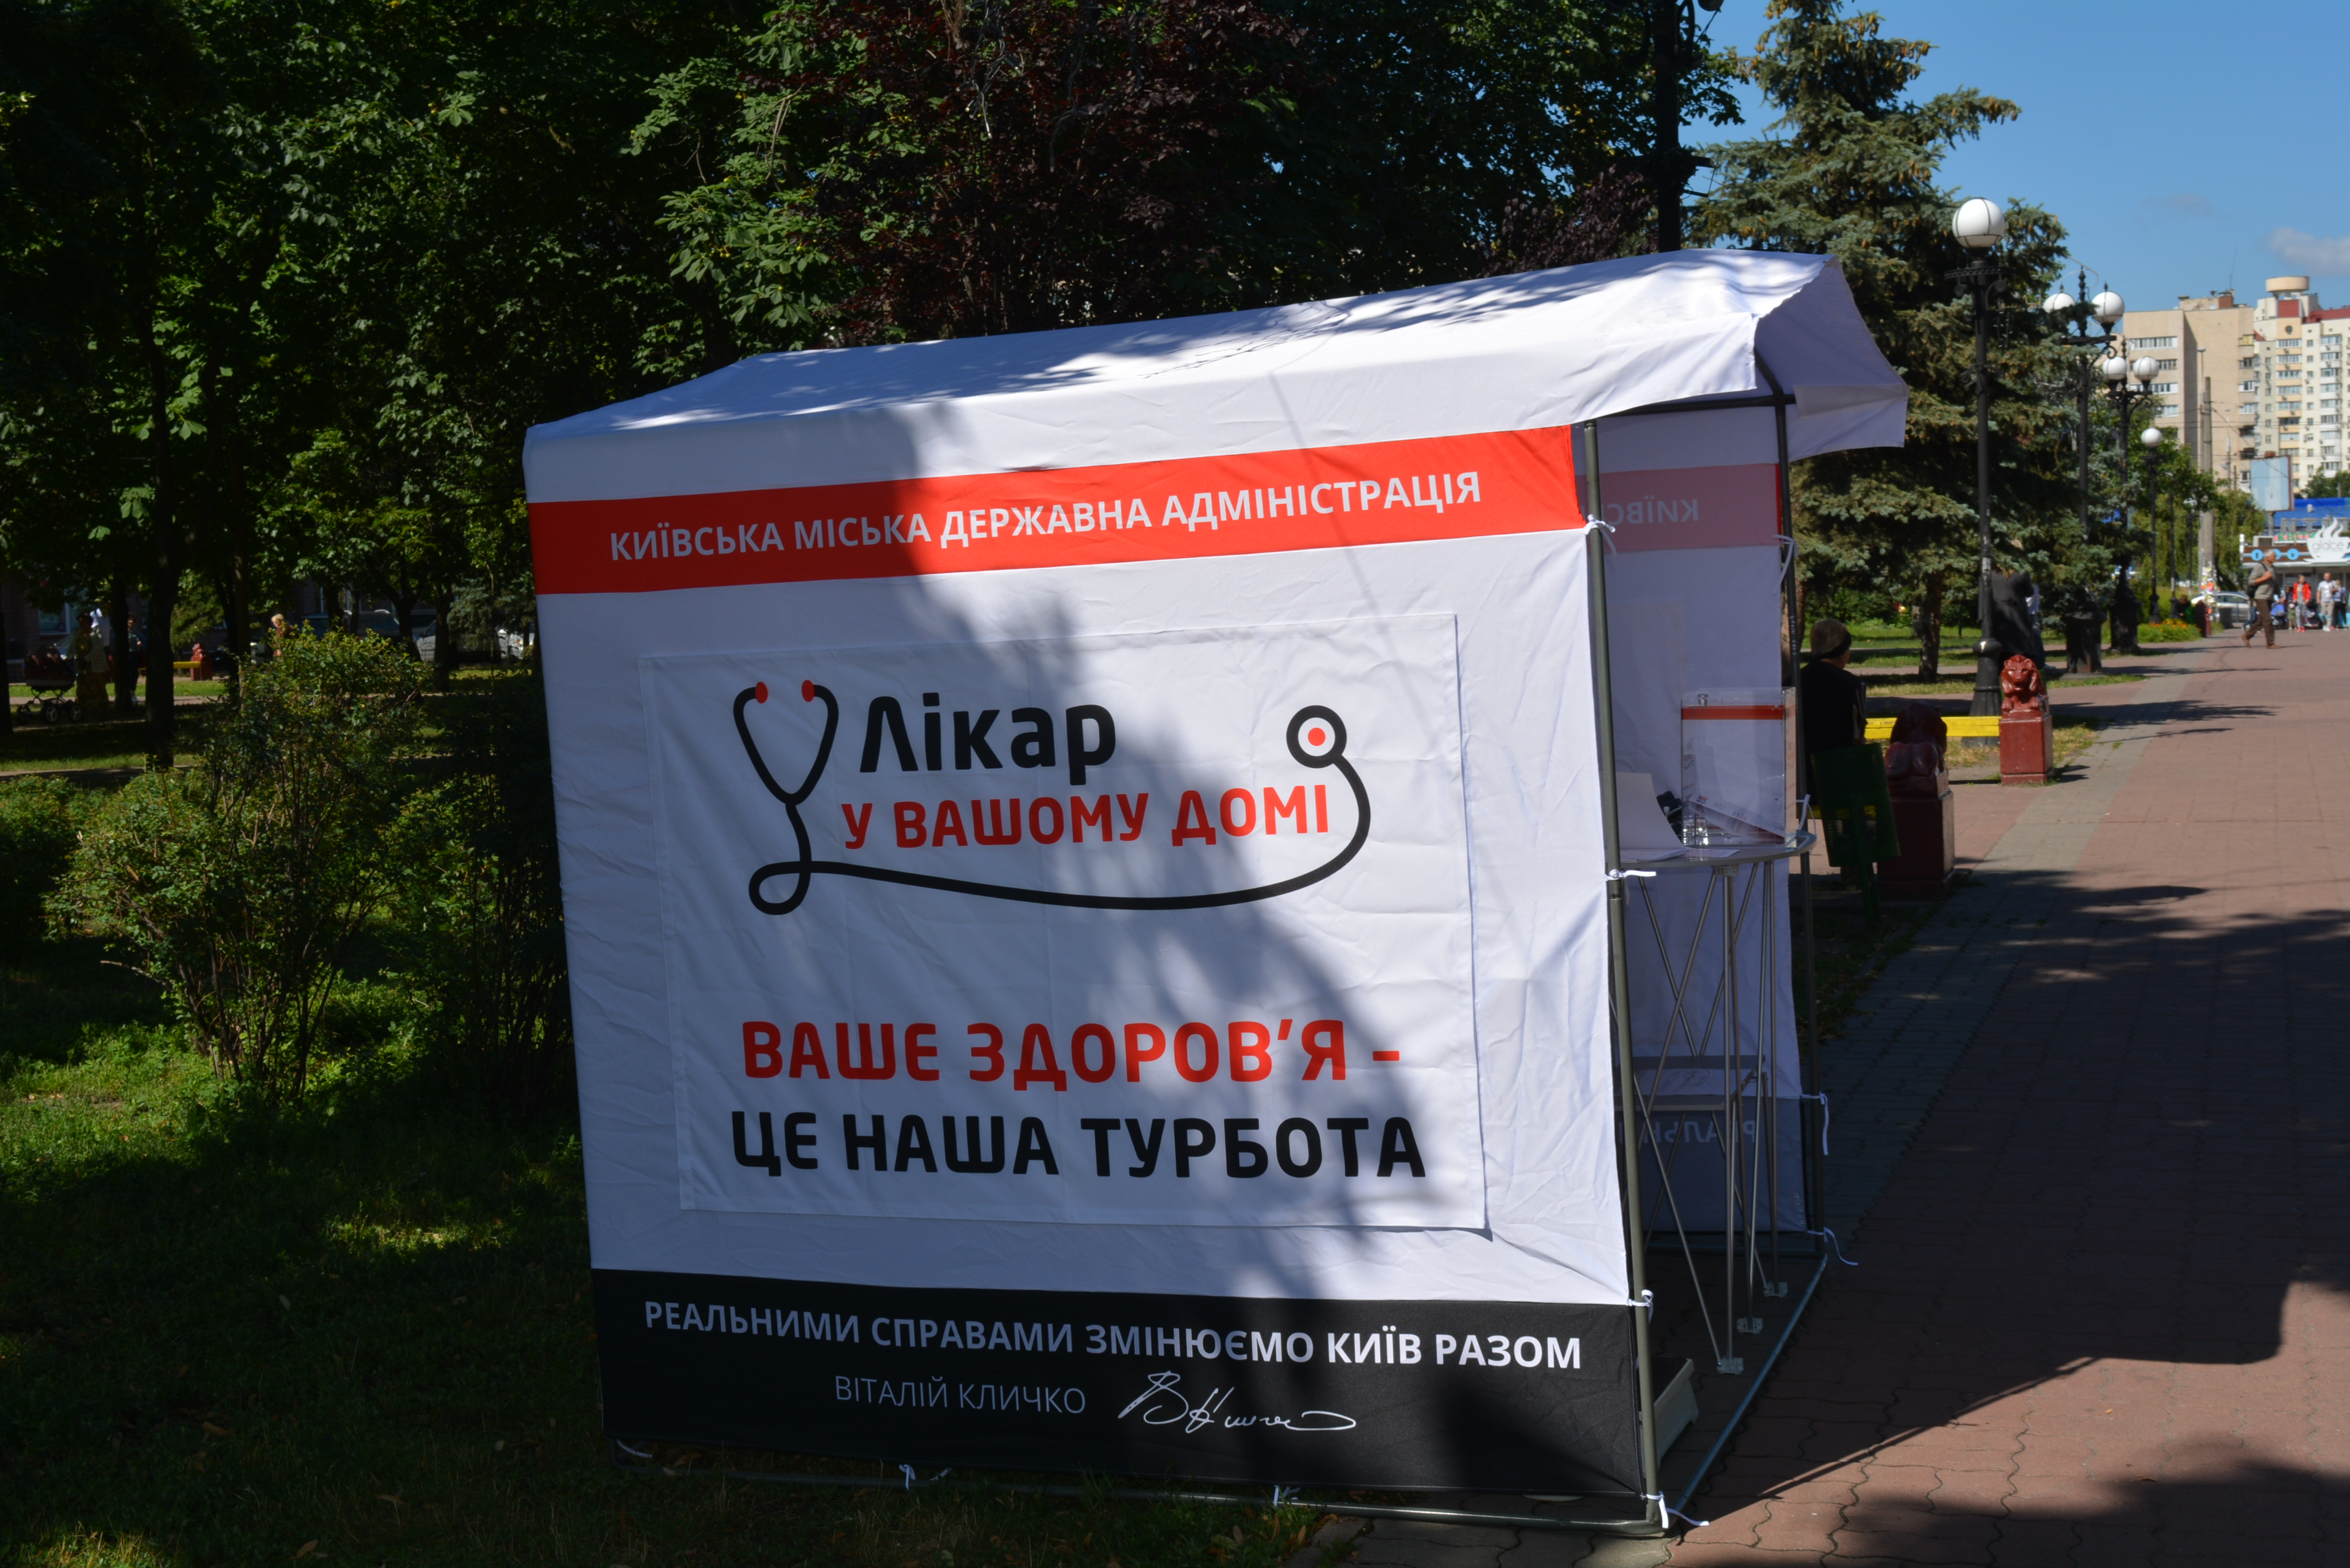 Сегодня в Оболонском районе Киева стартовал проект “Врач в Вашем доме” (адреса)